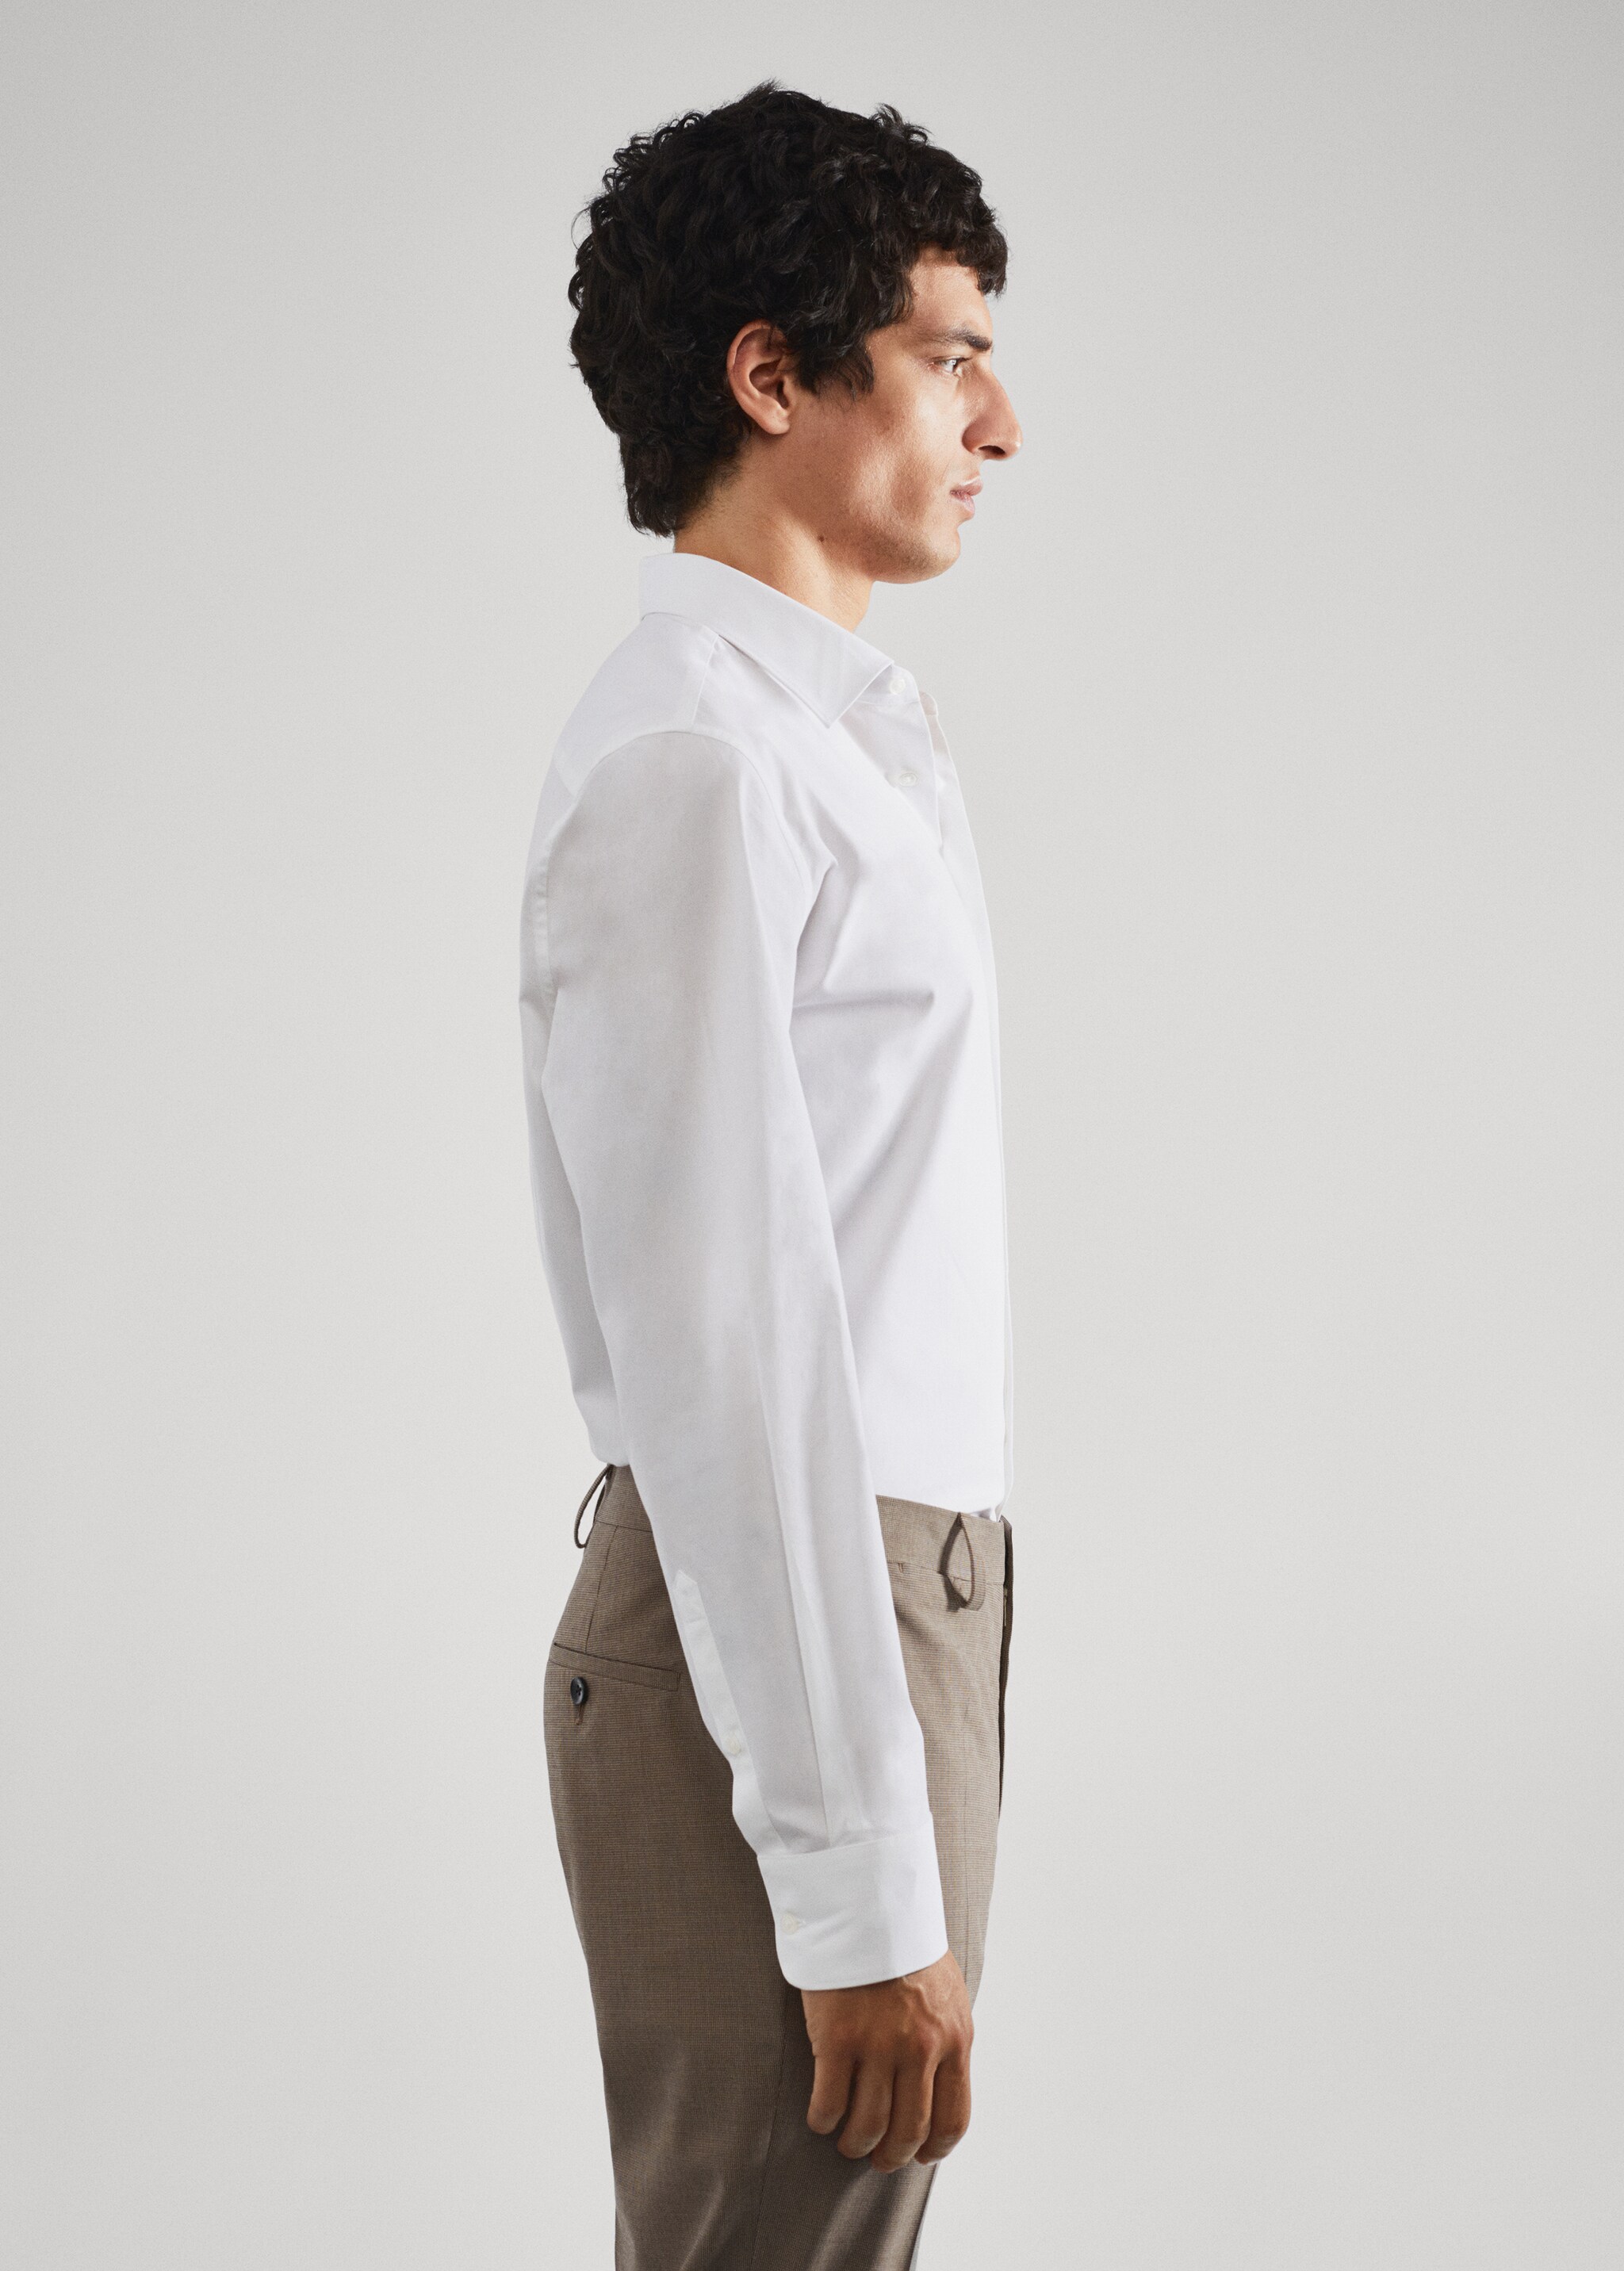 Camisa traje slim fit algodón stretch - Detalle del artículo 1